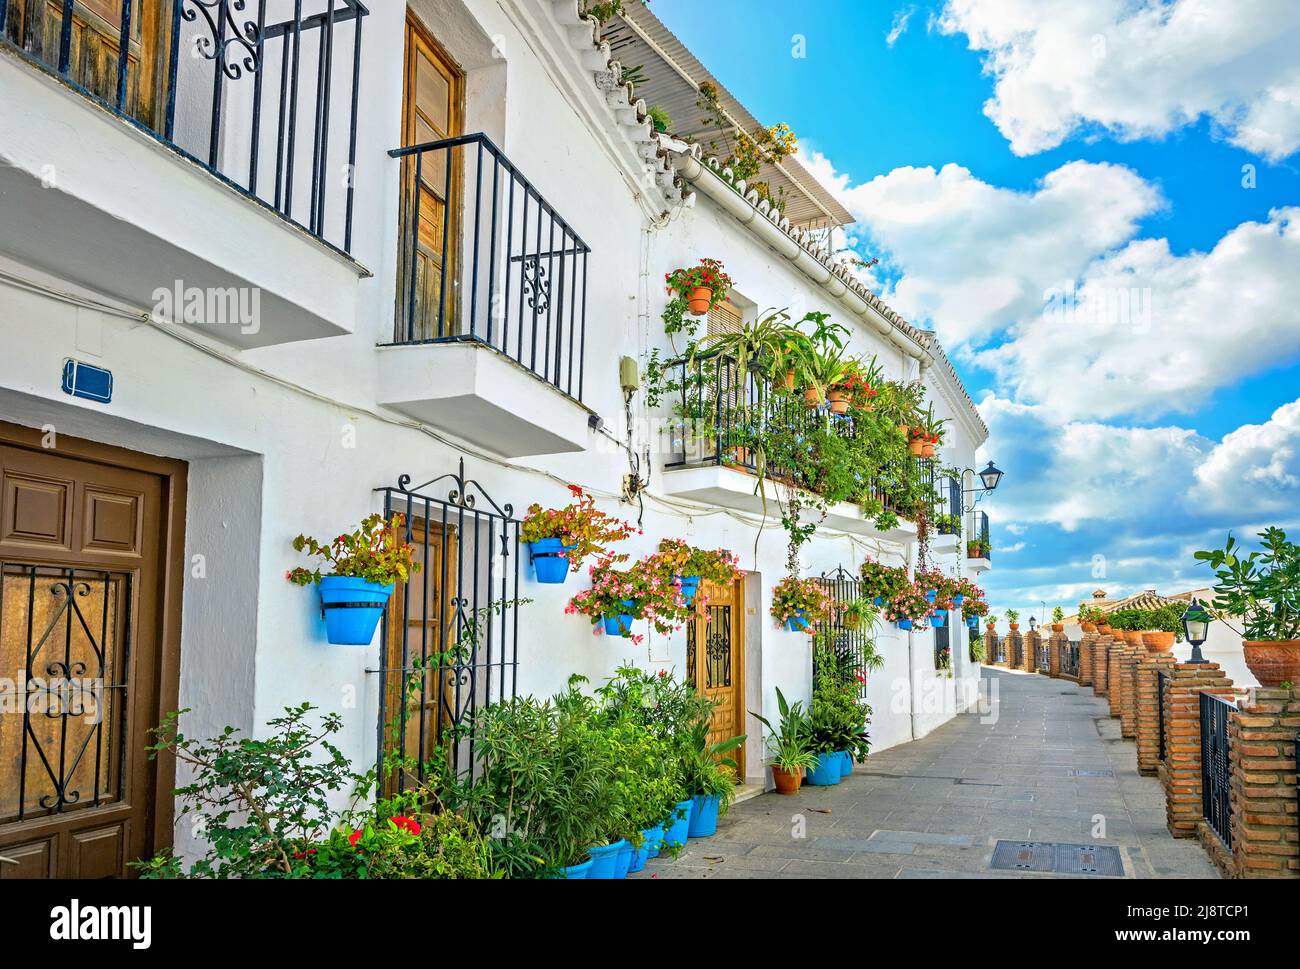 Pintoresca calle estrecha y fachada típica de casa blanca decorada con macetas de flores azules en Mijas. Provincia de Málaga, Andalucía, España Foto de stock